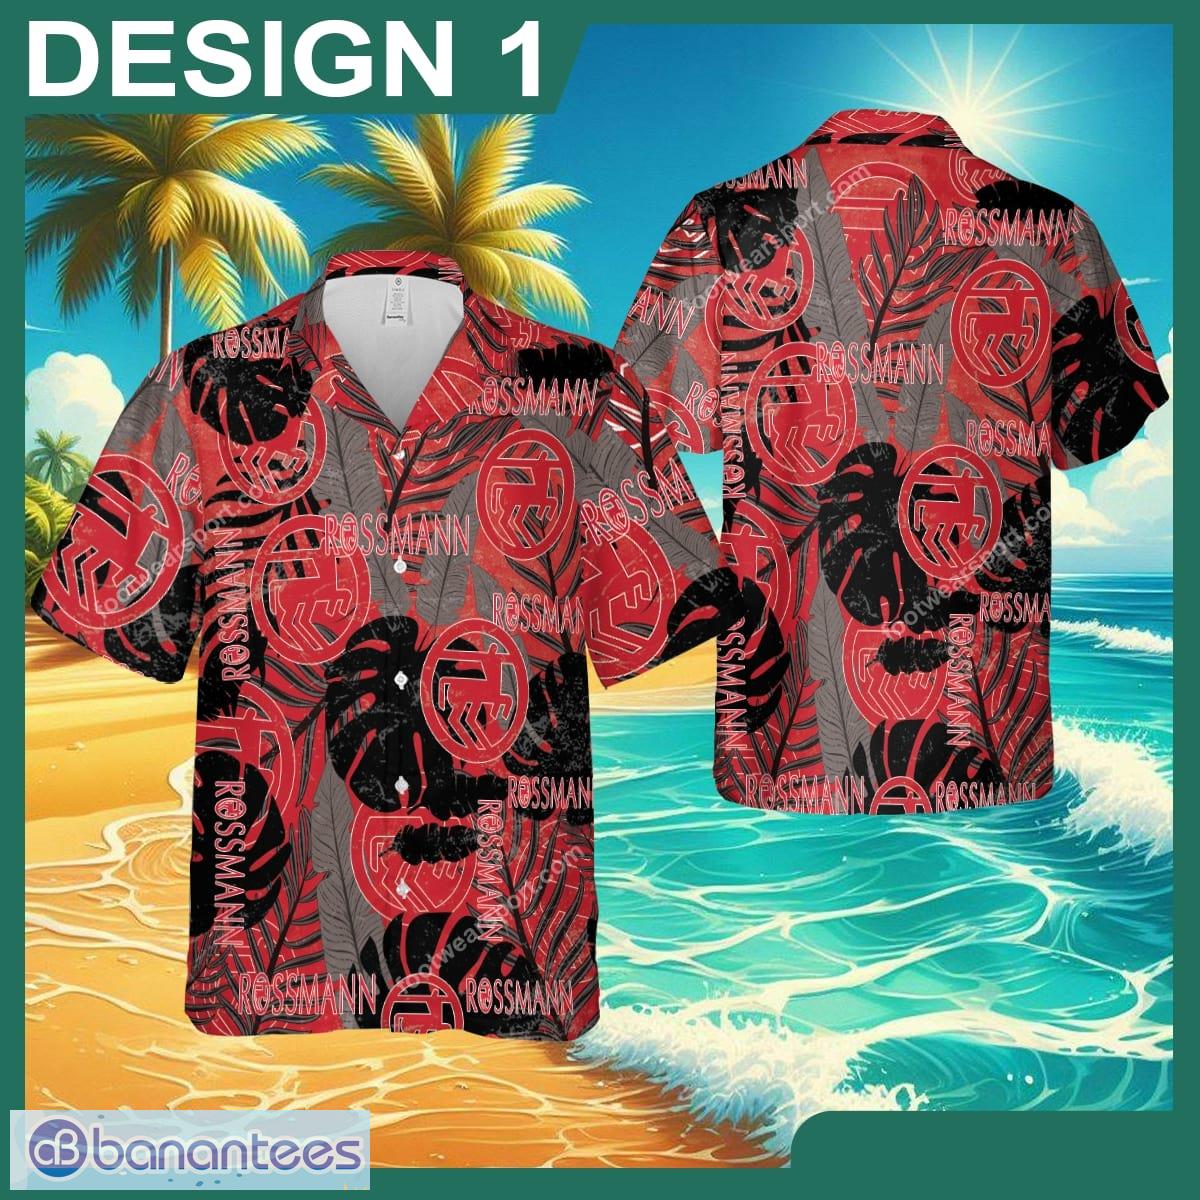 Rossmann Hibiscus Brand Beach Hawaiian Shirt Retro Vintage For Men And Women - Brand Style 1 Rossmann Hawaiin Shirt Design Pattern